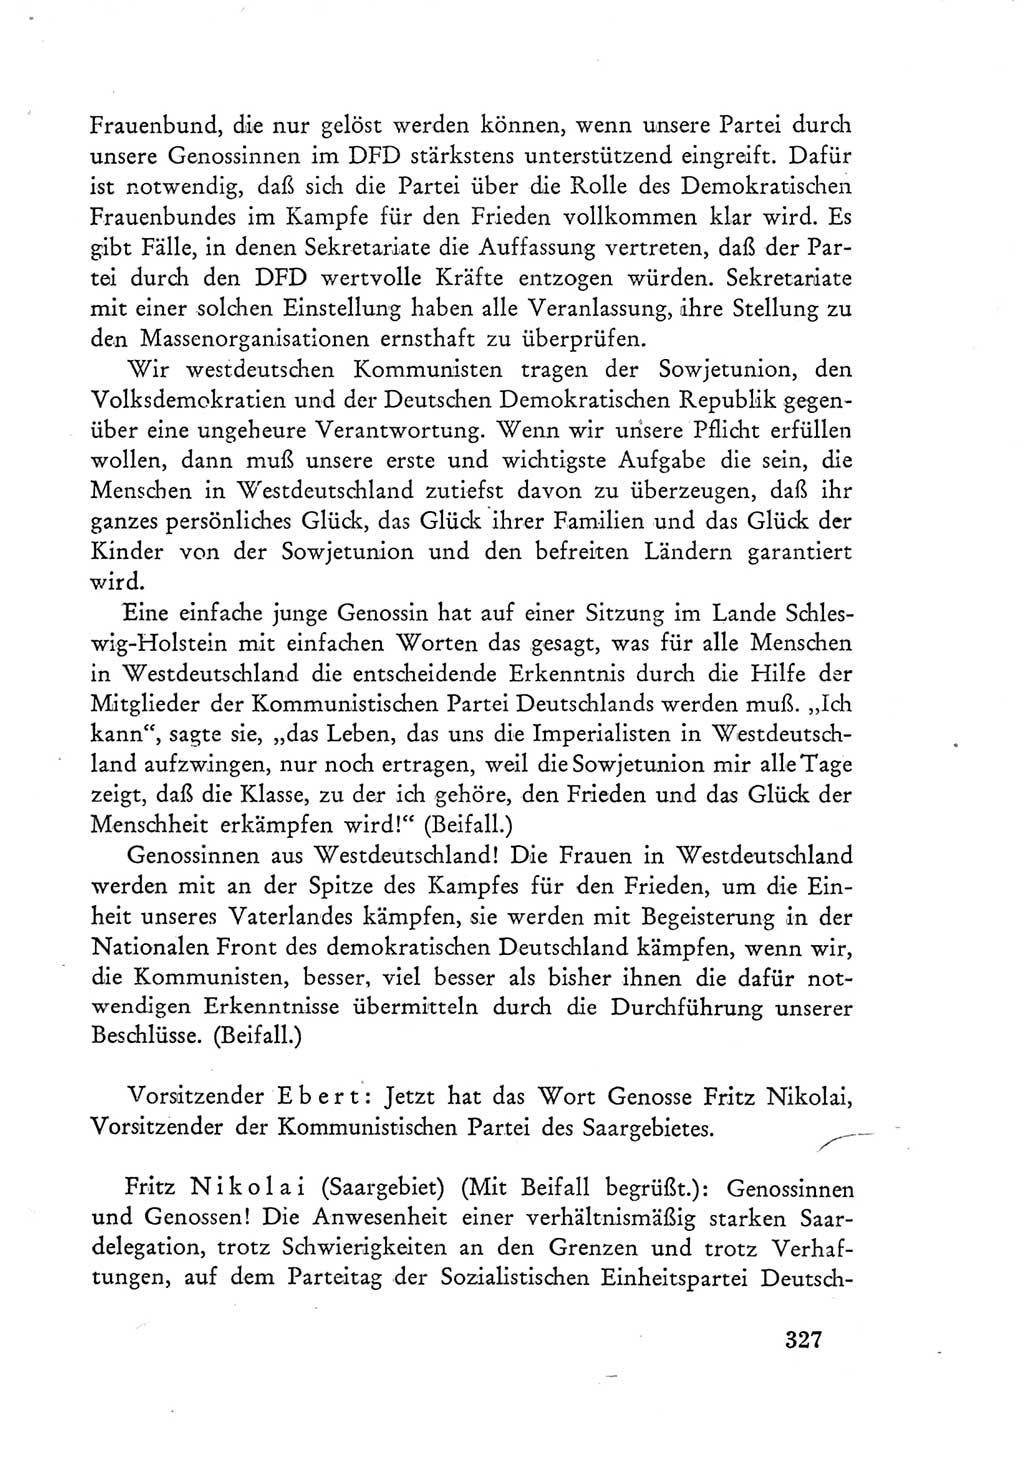 Protokoll der Verhandlungen des Ⅲ. Parteitages der Sozialistischen Einheitspartei Deutschlands (SED) [Deutsche Demokratische Republik (DDR)] 1950, Band 1, Seite 327 (Prot. Verh. Ⅲ. PT SED DDR 1950, Bd. 1, S. 327)